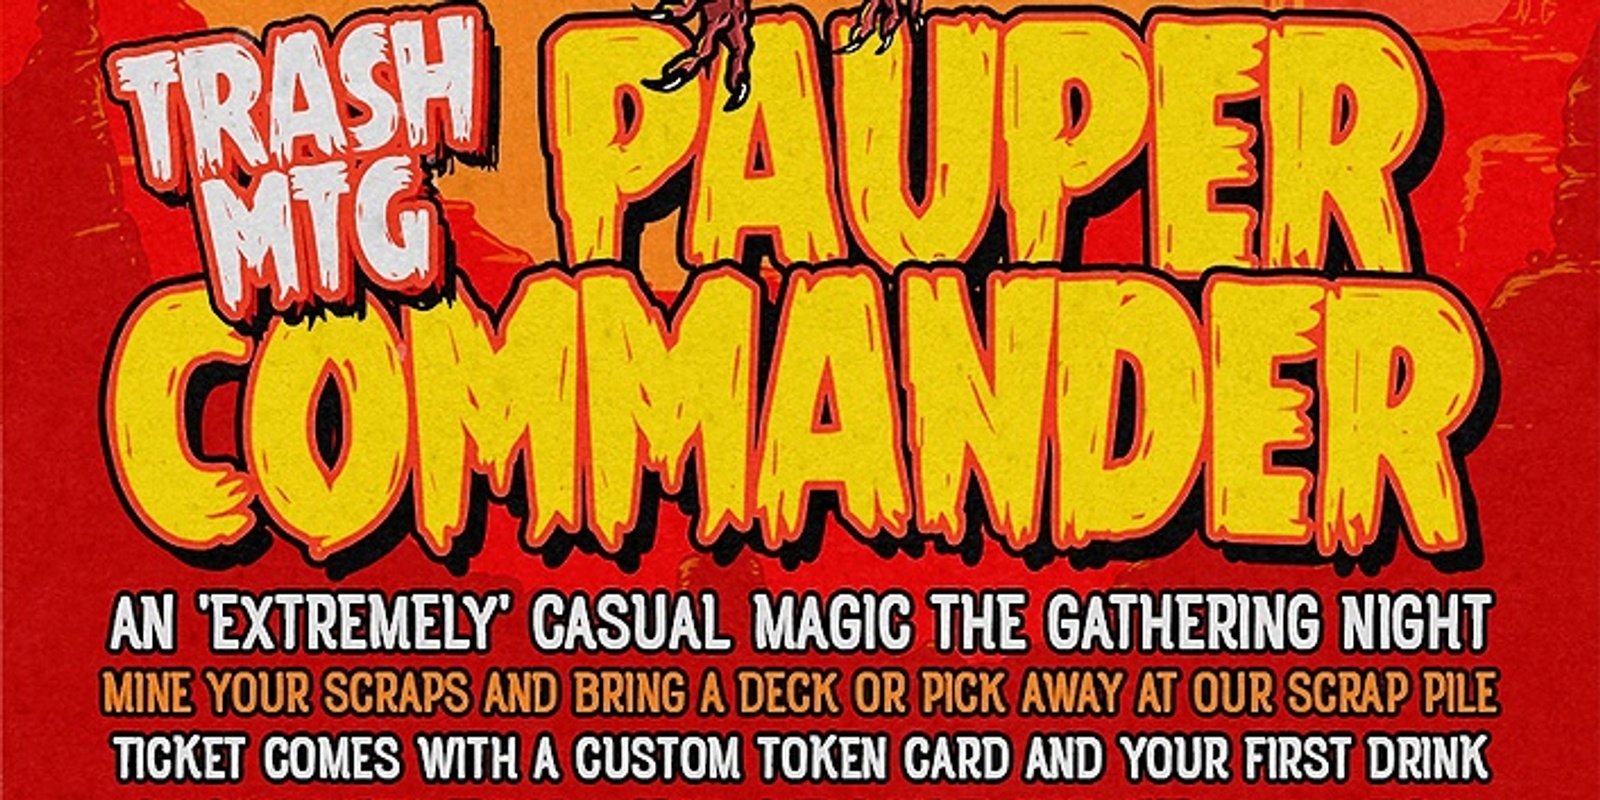 Banner image for Trash MTG - Pauper Commander